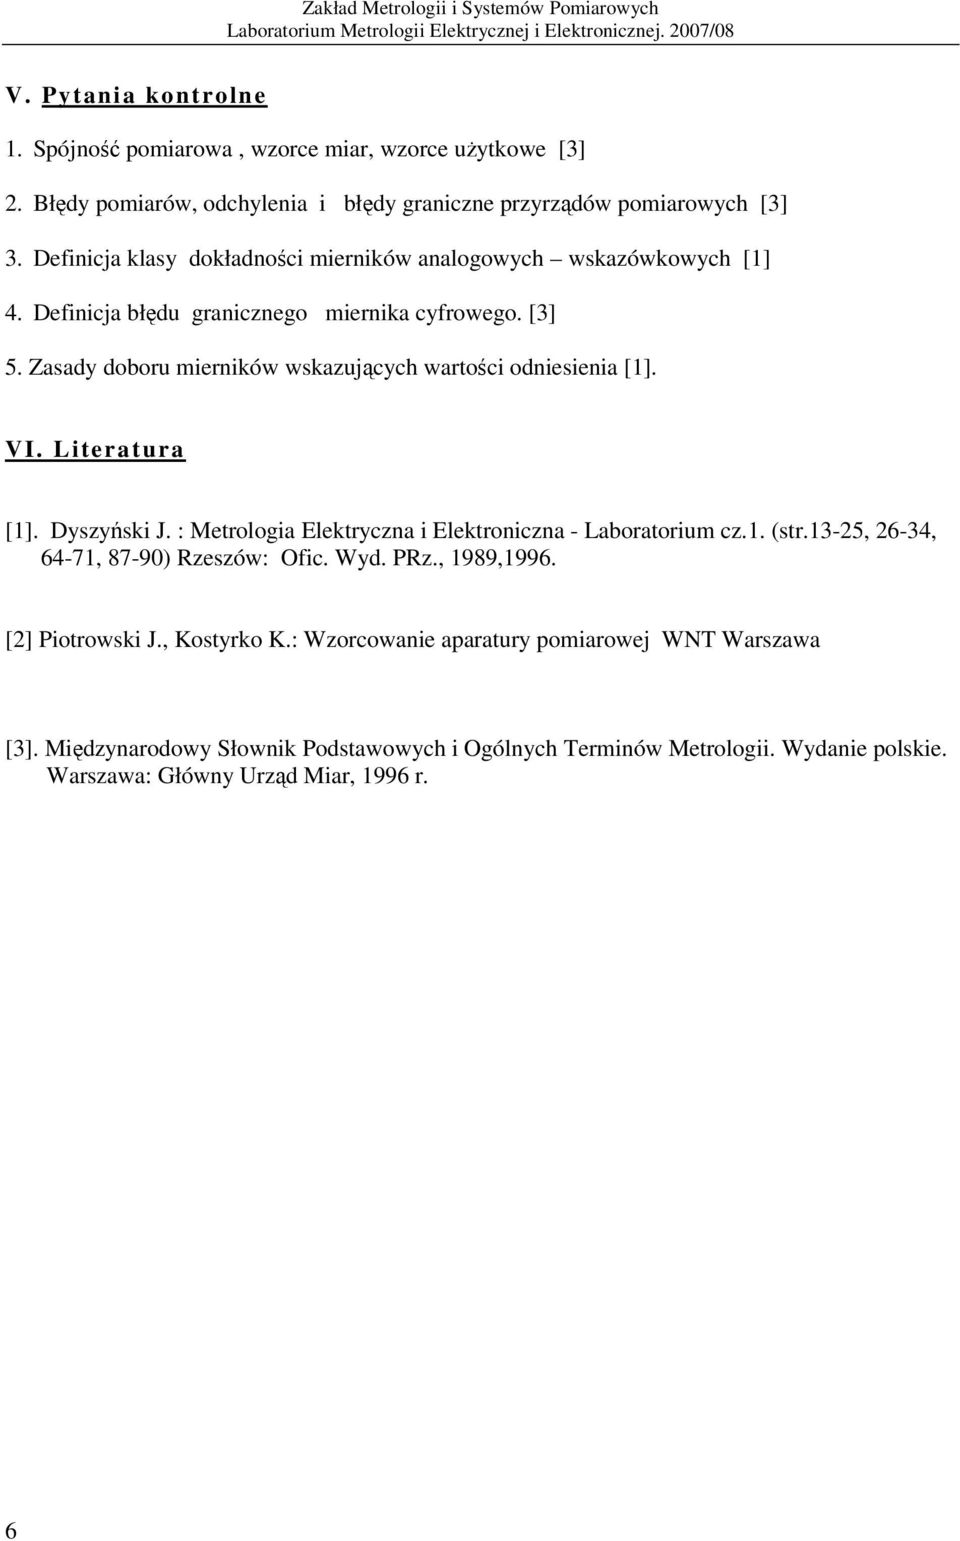 VI. Literatura [1]. Dyszyński J. : Metrologia Elektryczna i Elektroniczna - Laboratorium cz.1. (str.13-25, 26-34, 64-71, 87-90) Rzeszów: Ofic. Wyd. PRz., 1989,1996.